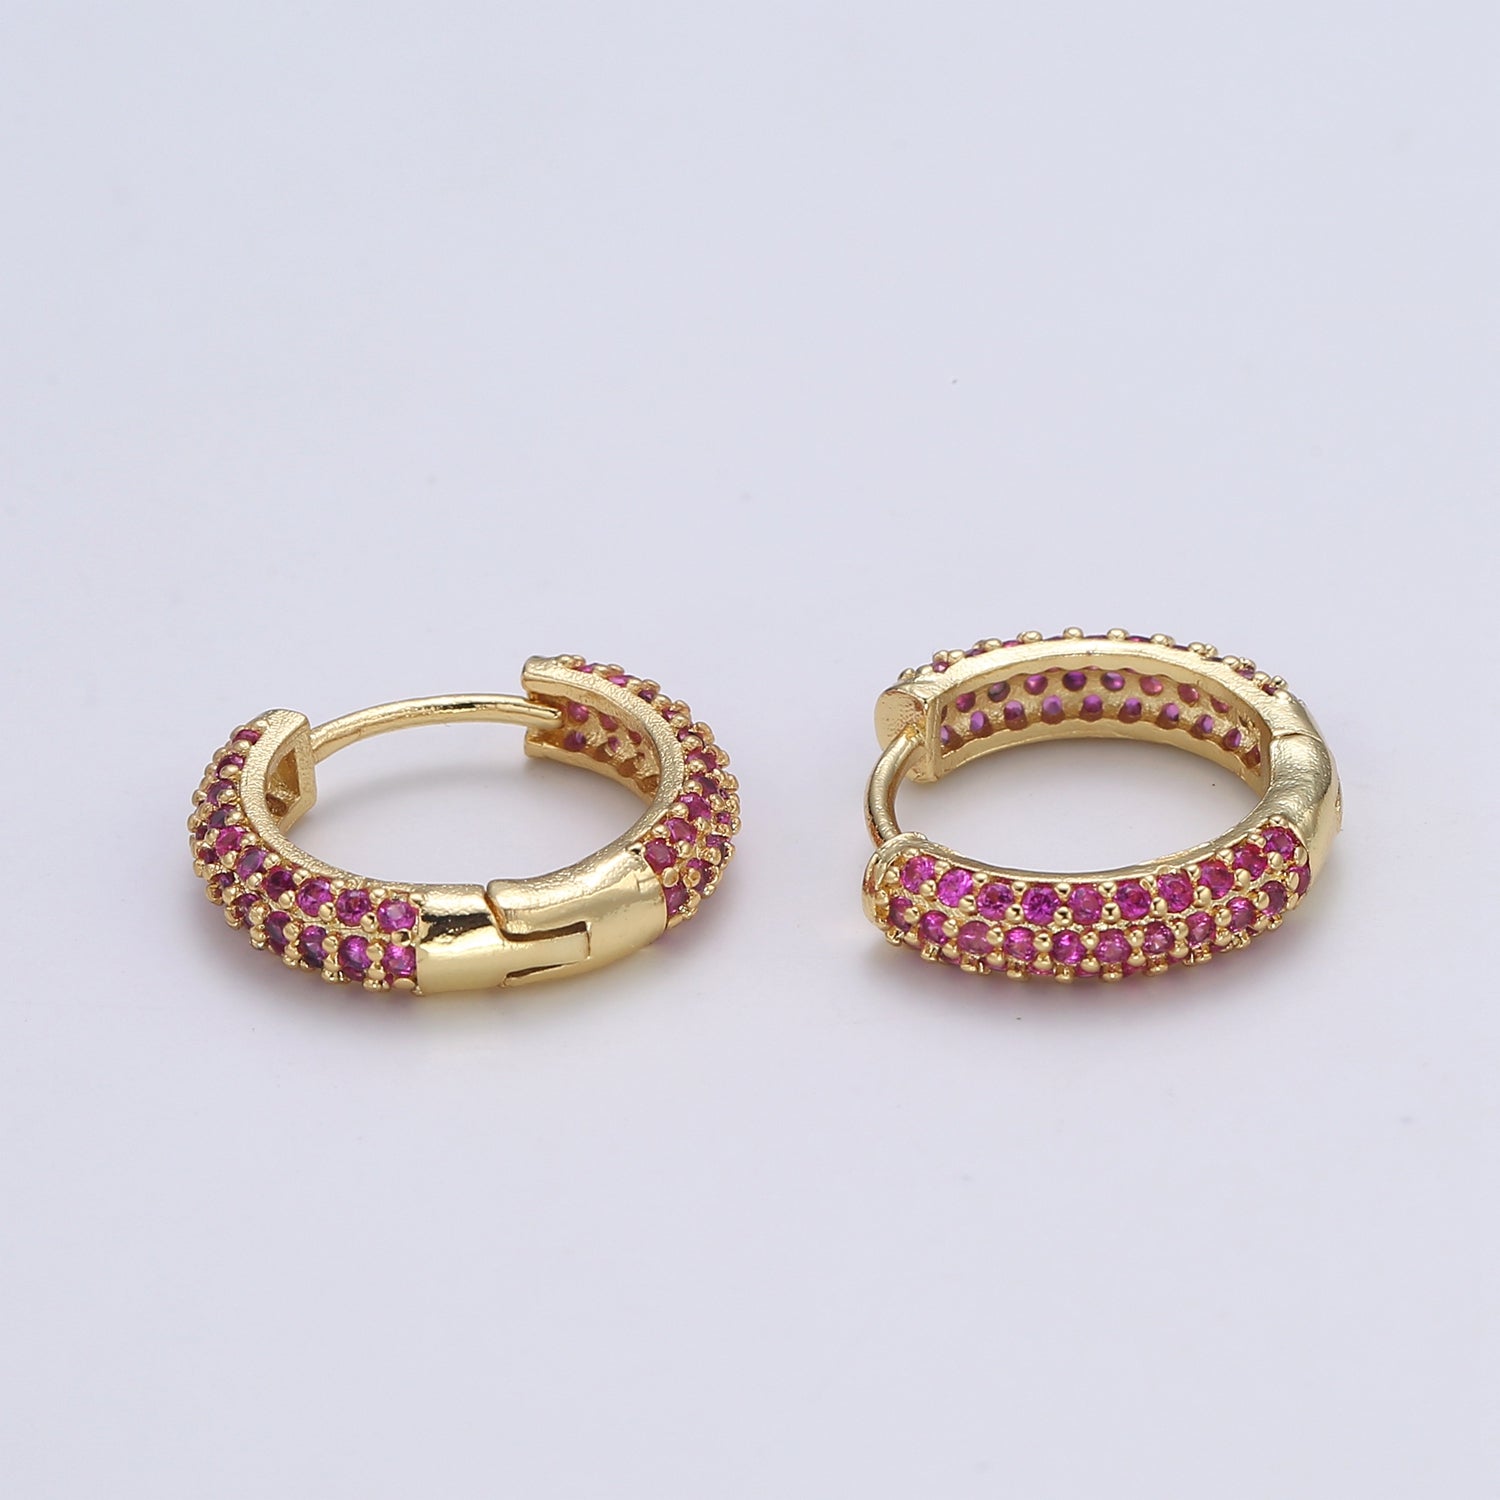 1 pair Hoops - Black, Blue, Clear, Red, Green, Multi-color Zirconia or Teal Gold CZ earrings - 24K Gold Huggie hoops EARRING-1412 - 1418 - DLUXCA